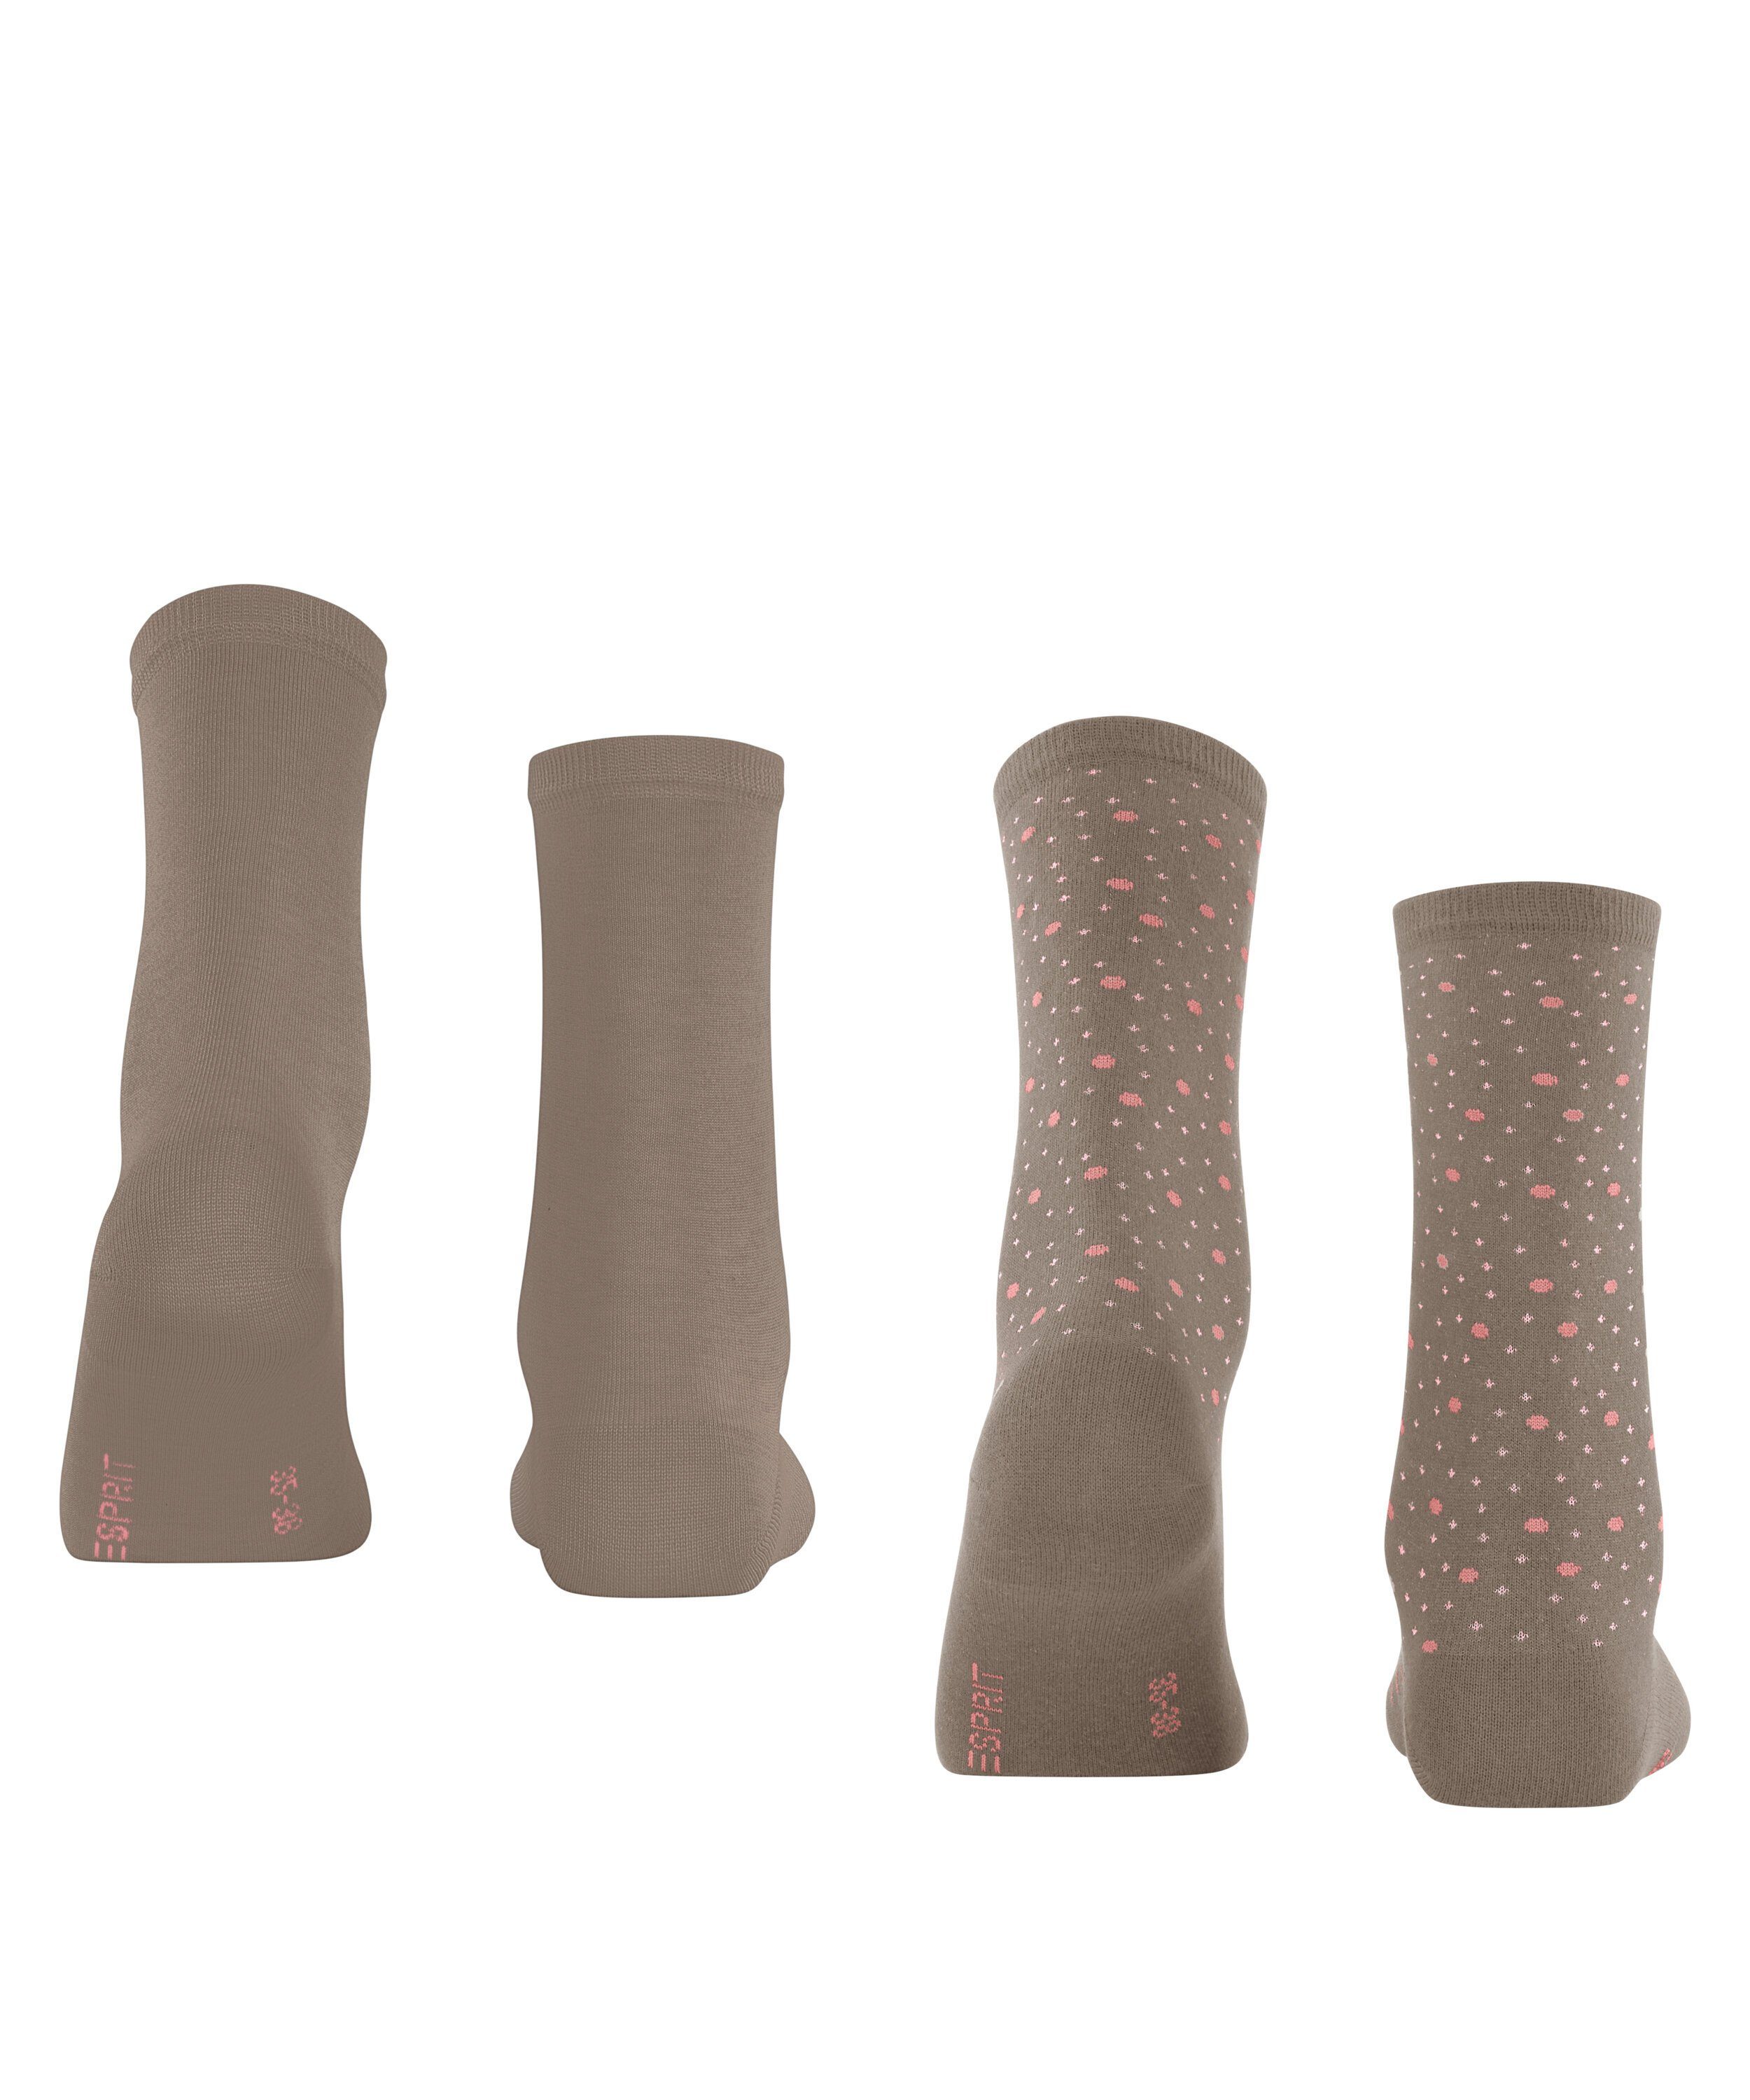 Dot sughero (5031) Socken Playful (2-Paar) 2-Pack Esprit